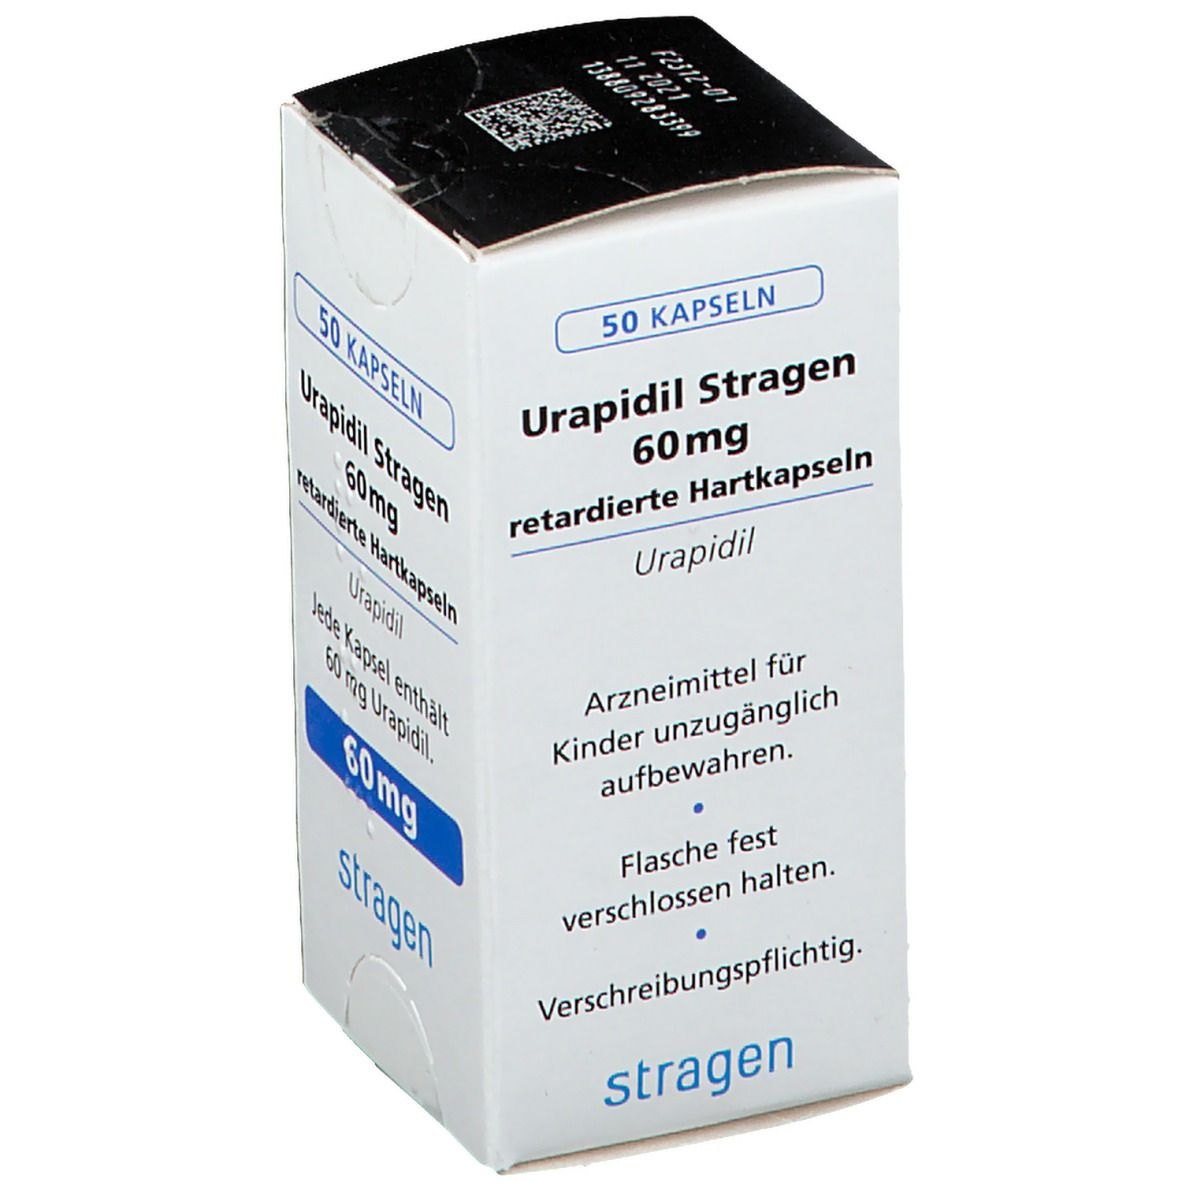 Urapidil Stragen 60 mg